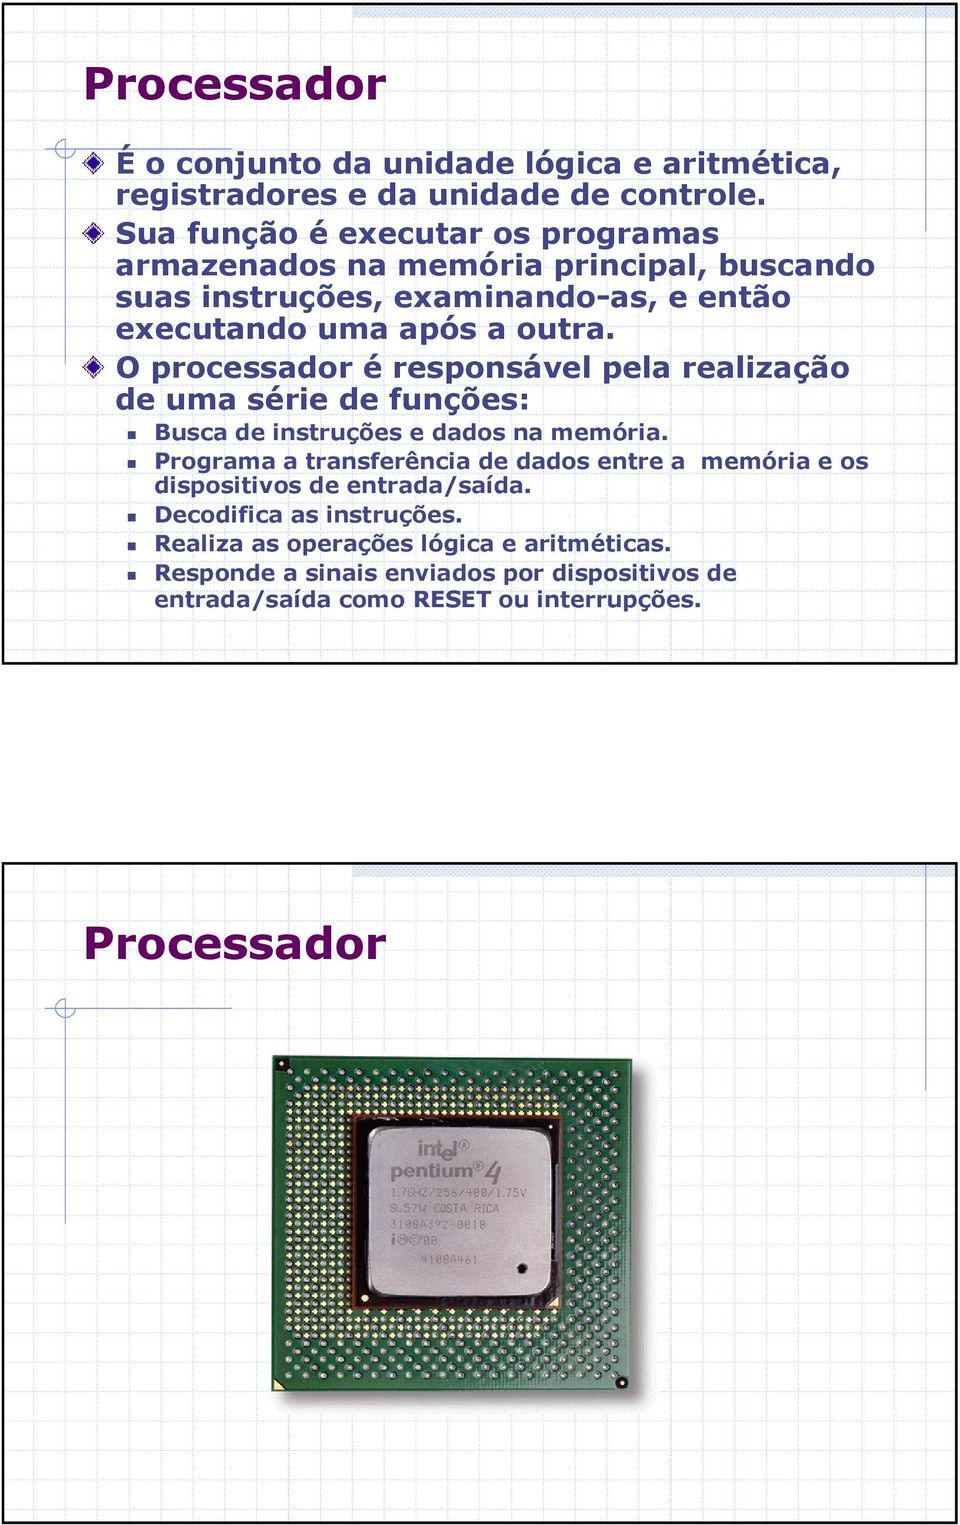 O processador é responsável pela realização de uma série de funções: Busca de instruções e dados na memória.